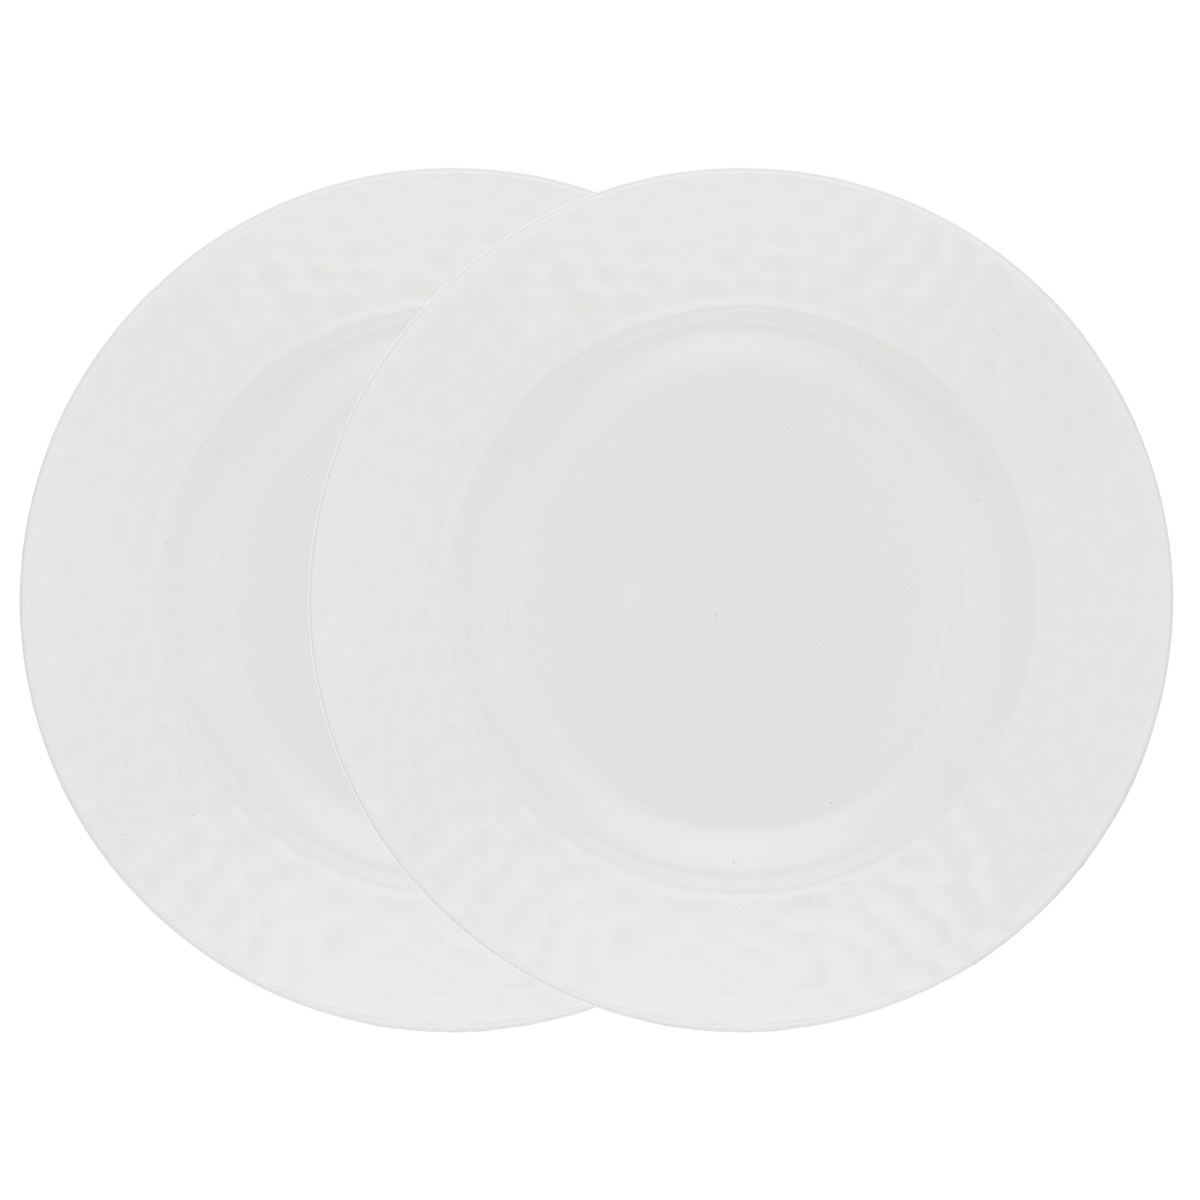 Набор суповых тарелок Gipfel Marbella 51713 20 см 2 предмета набор тарелок суповых gipfel platinum 22 см 4 шт